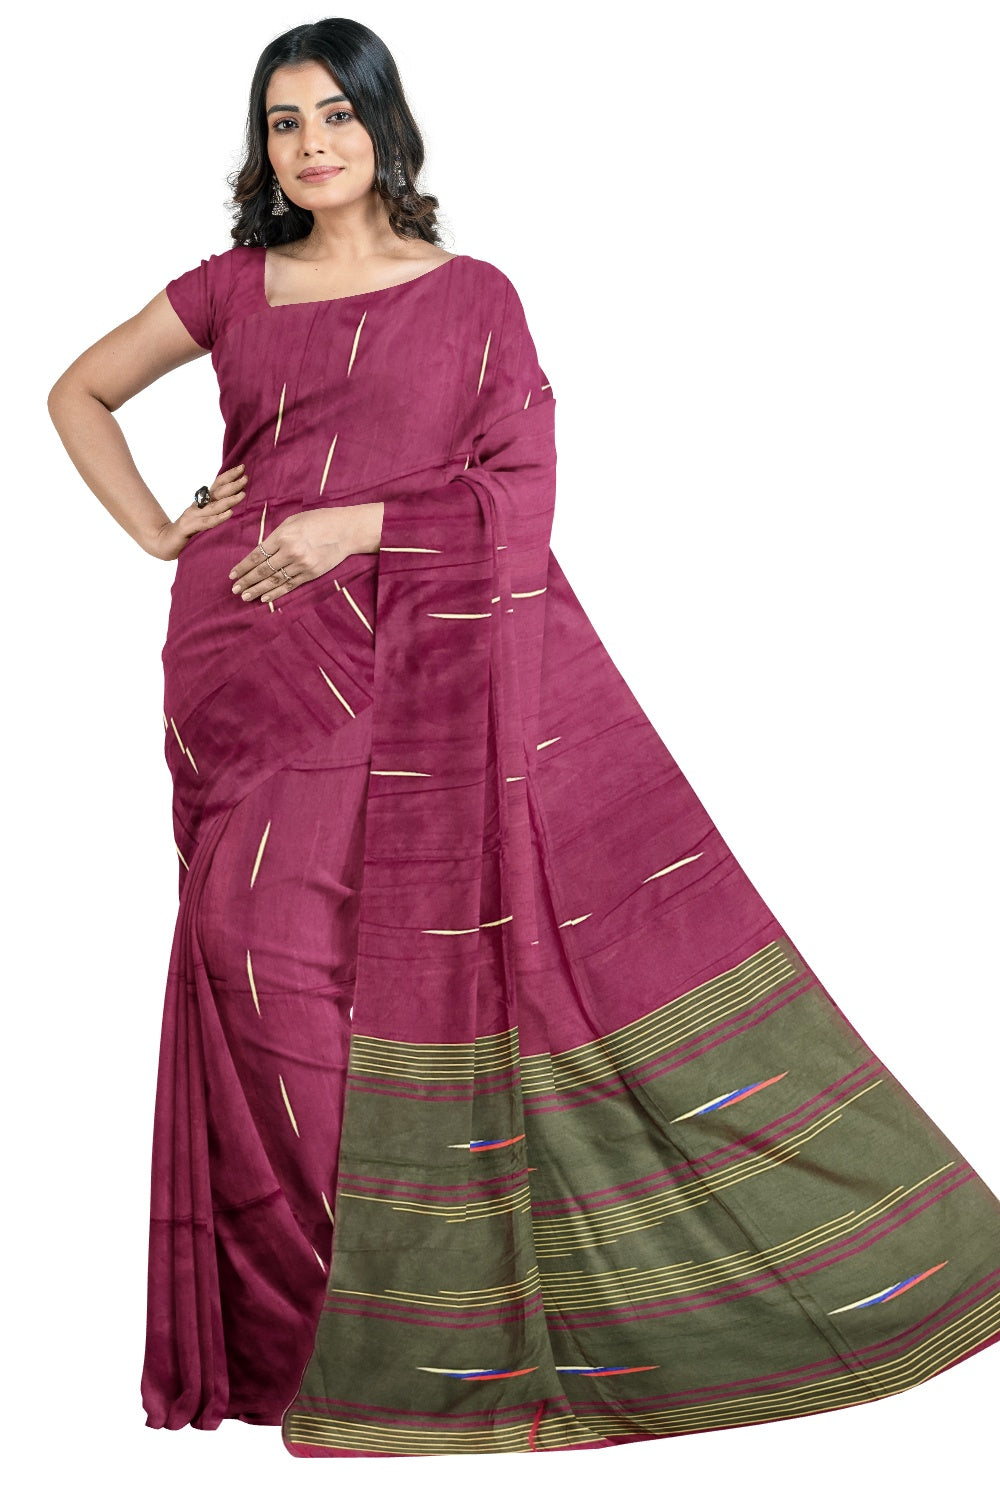 Southloom Tussar Thread Work Magenta Designer Saree with Dark Green Pallu